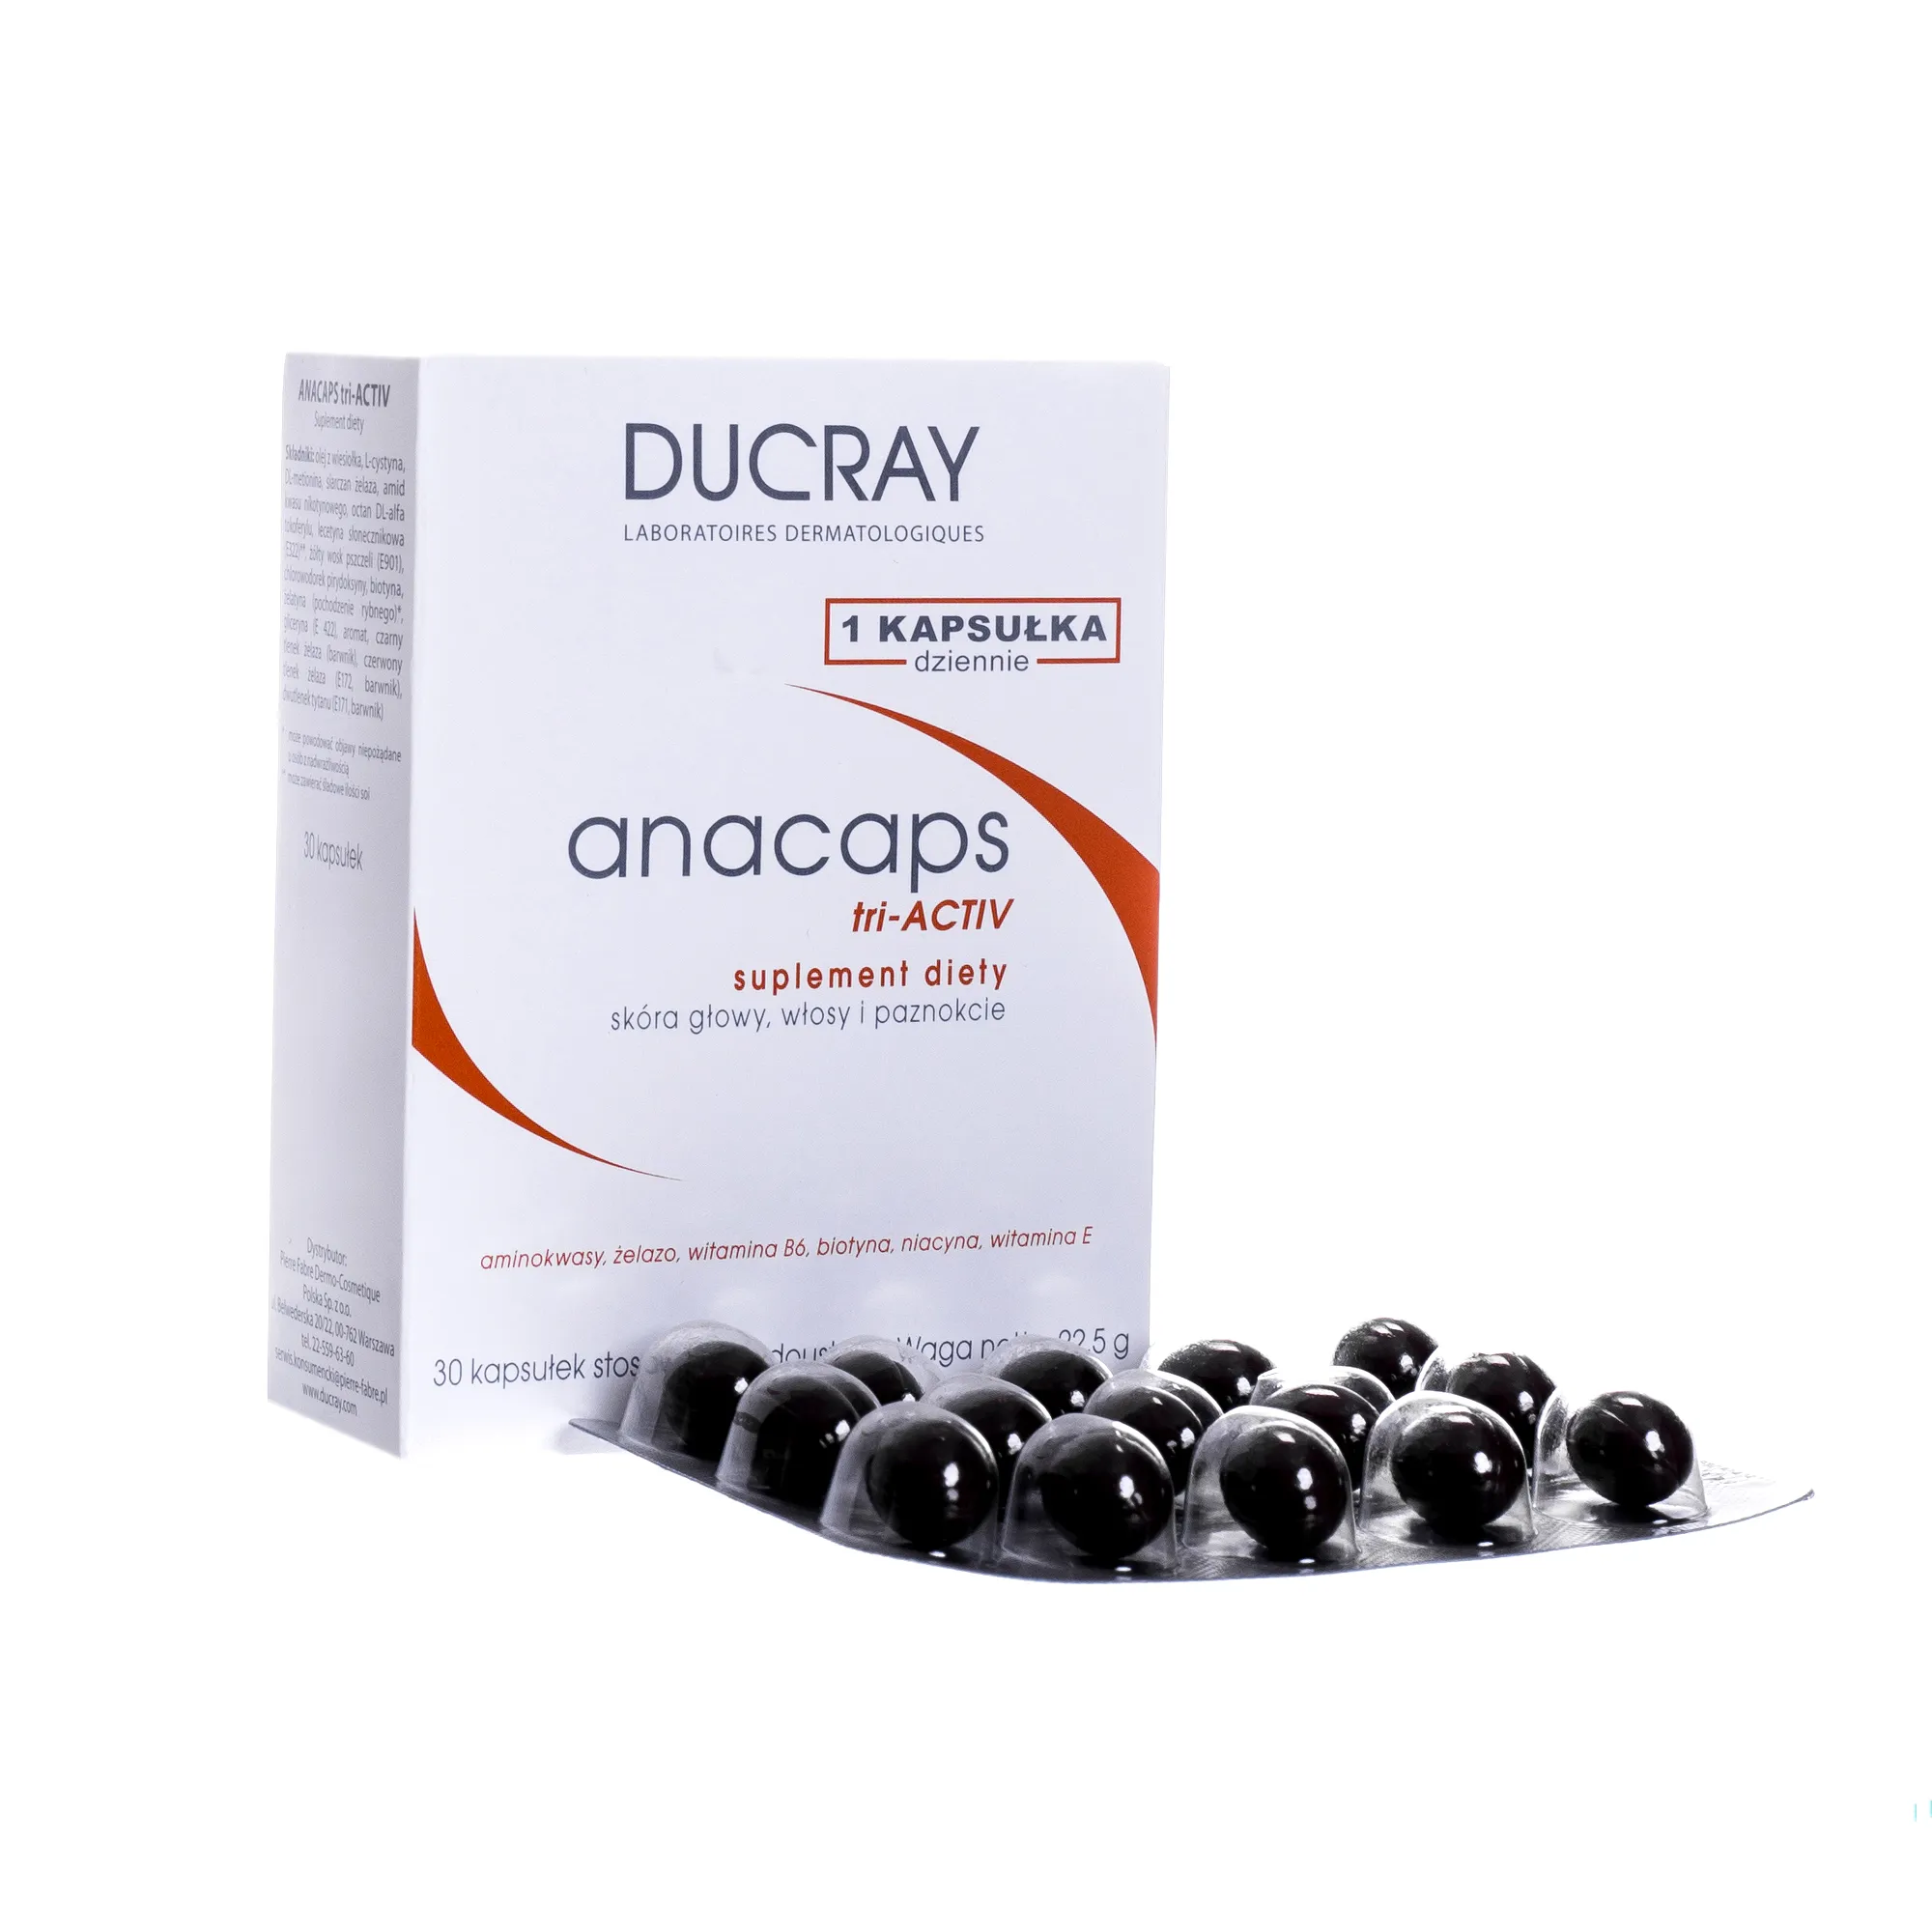 Ducray Anacaps Tri-Activ, suplement diety, 30 kapsułek 